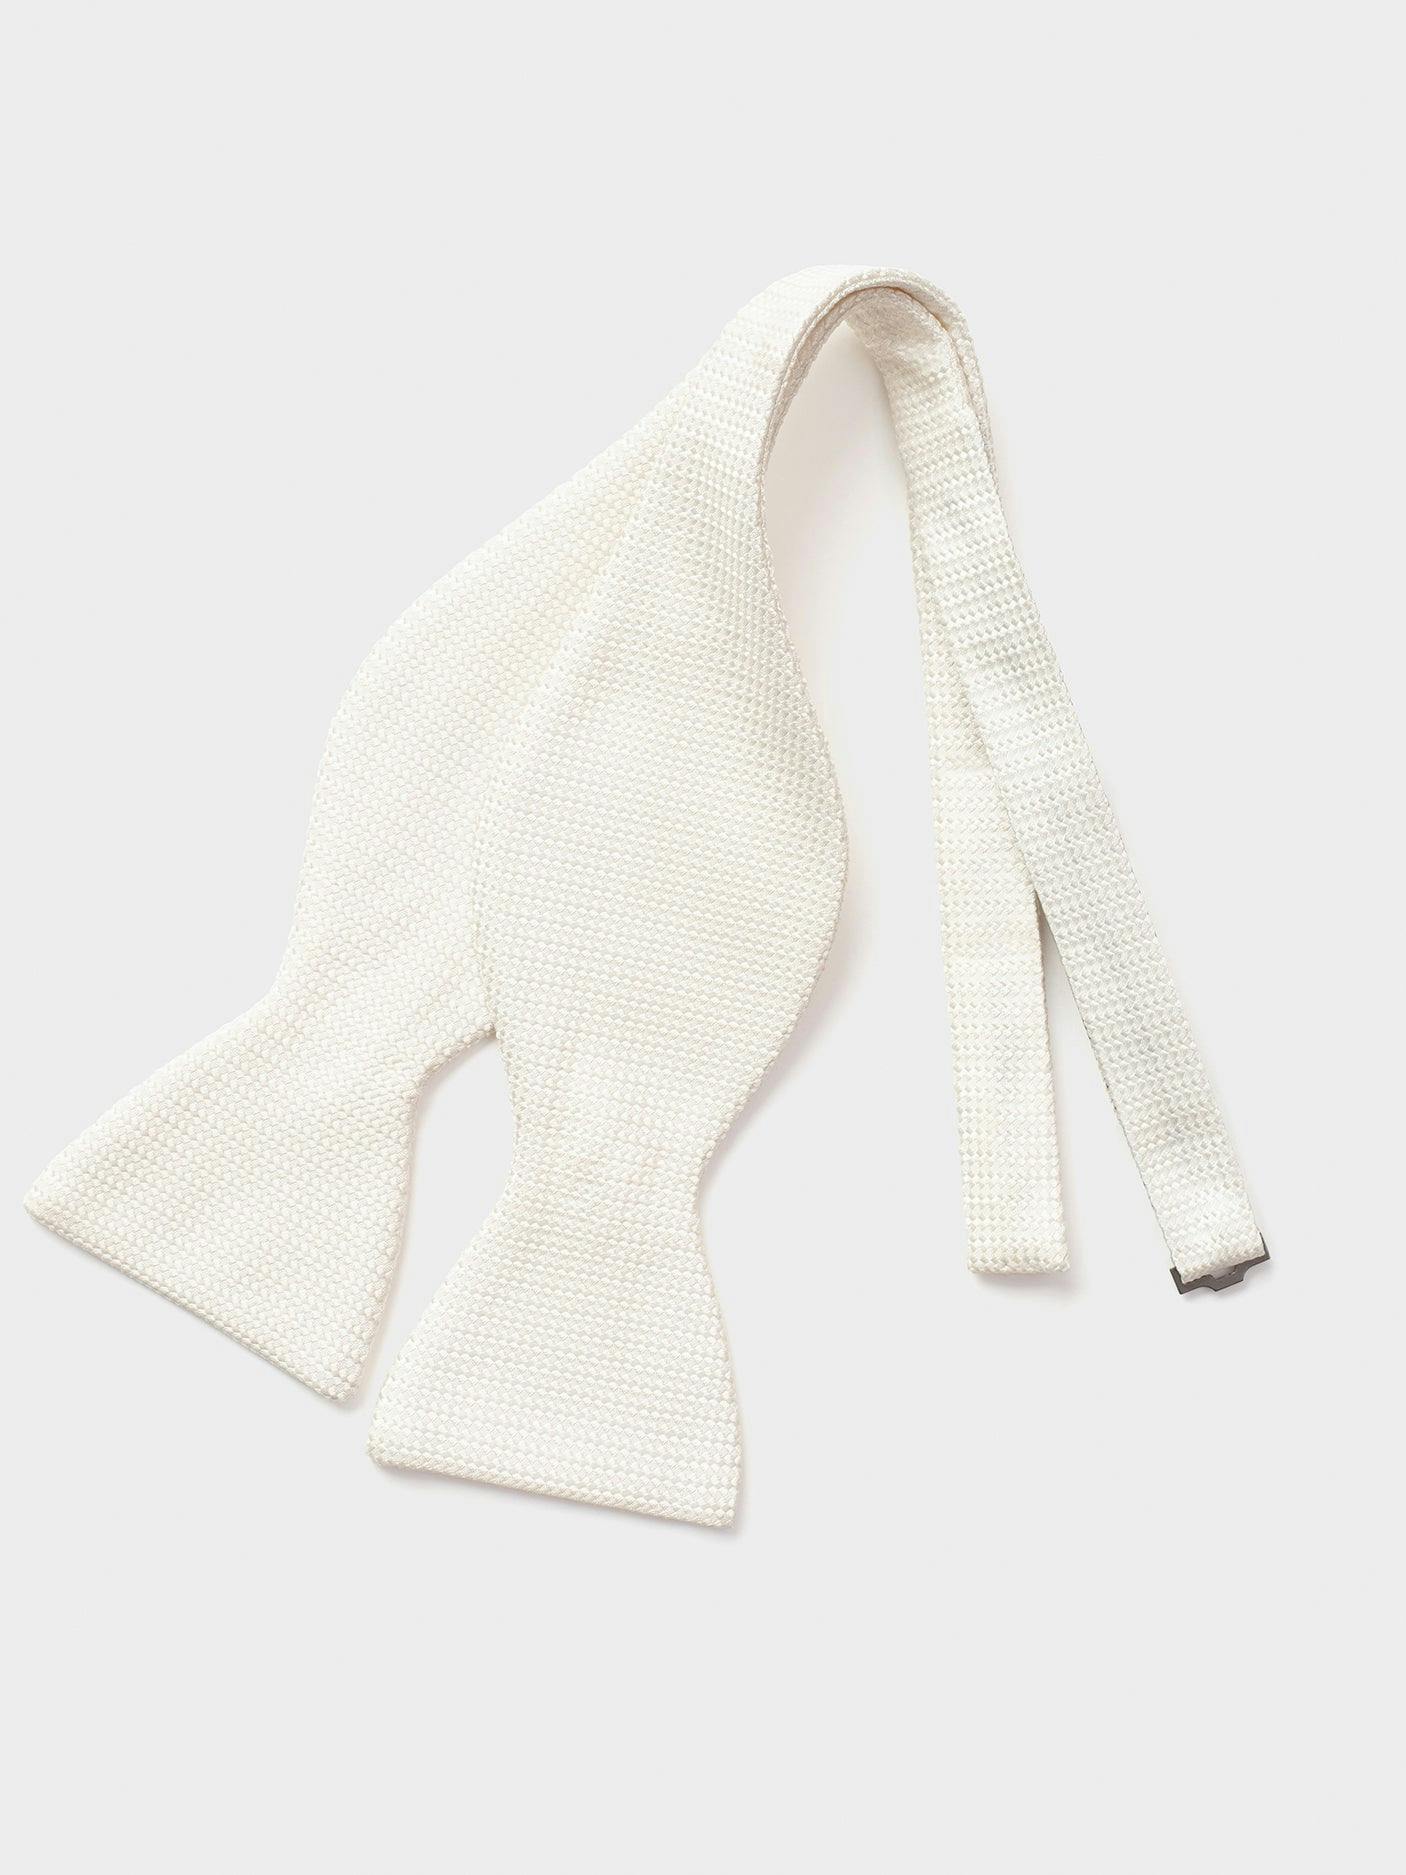 Ivory Textured Silk Bow Tie